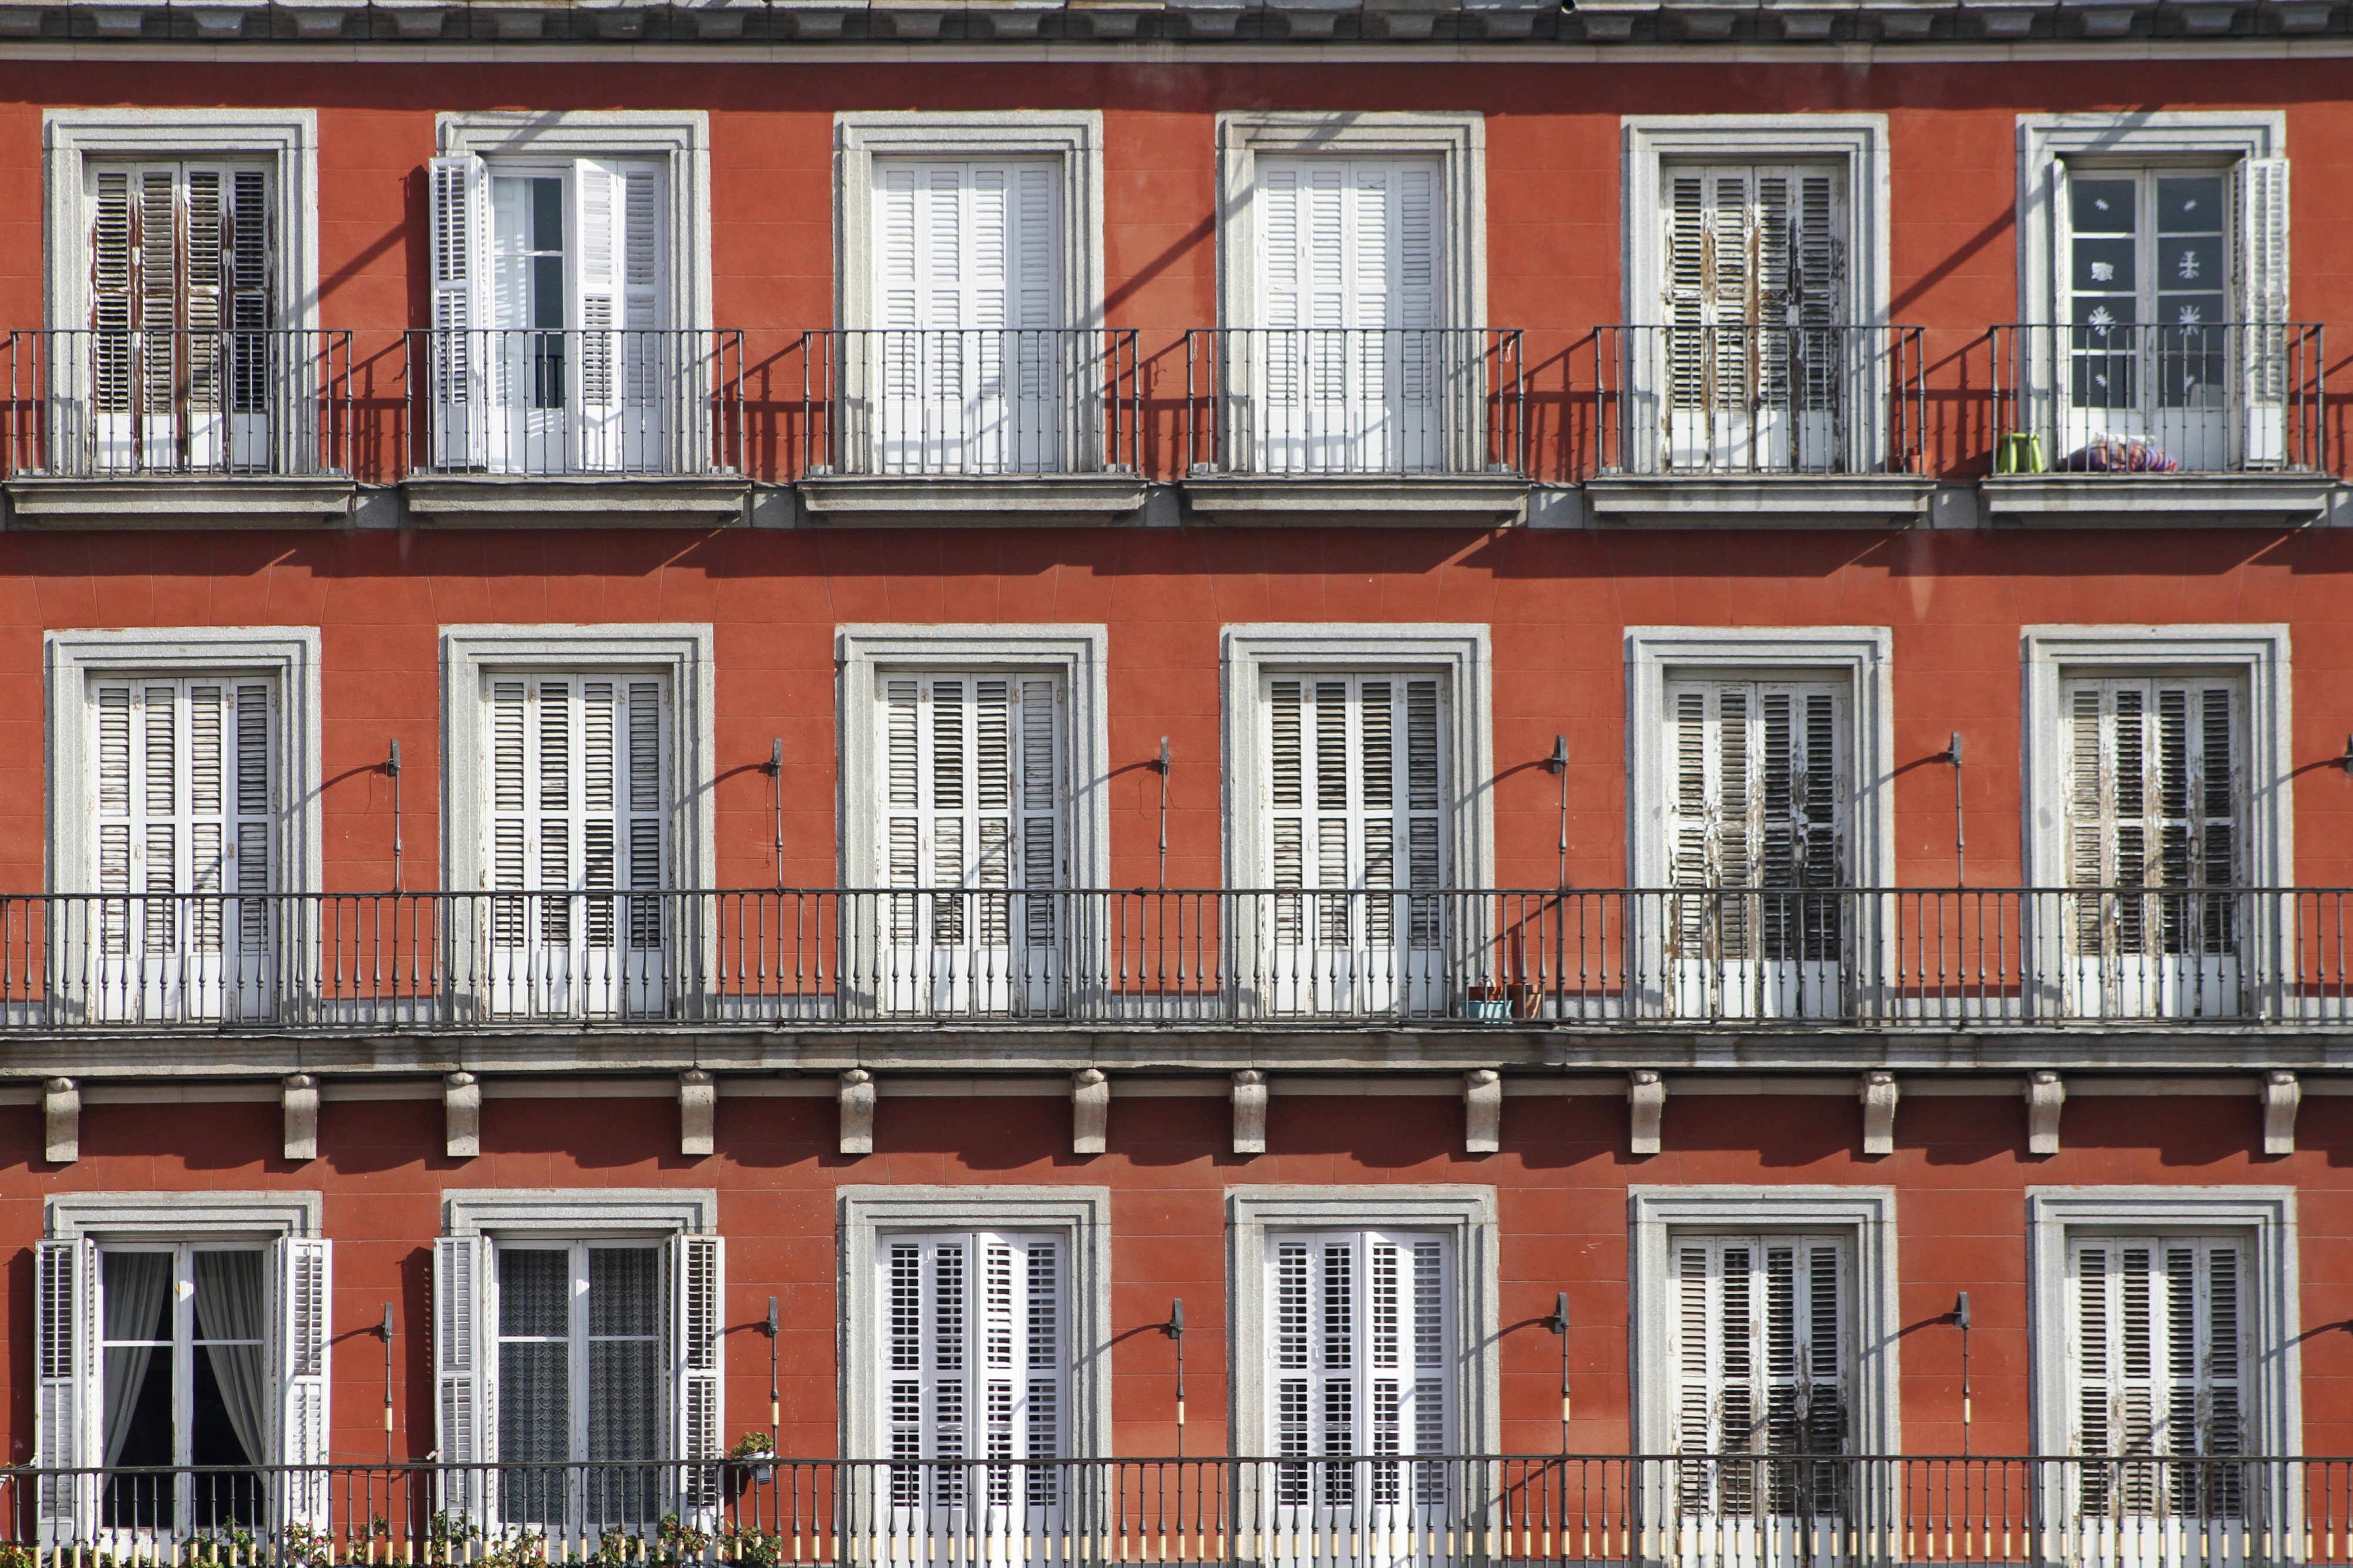 Windows at Plaza Mayor - Madrid (2)